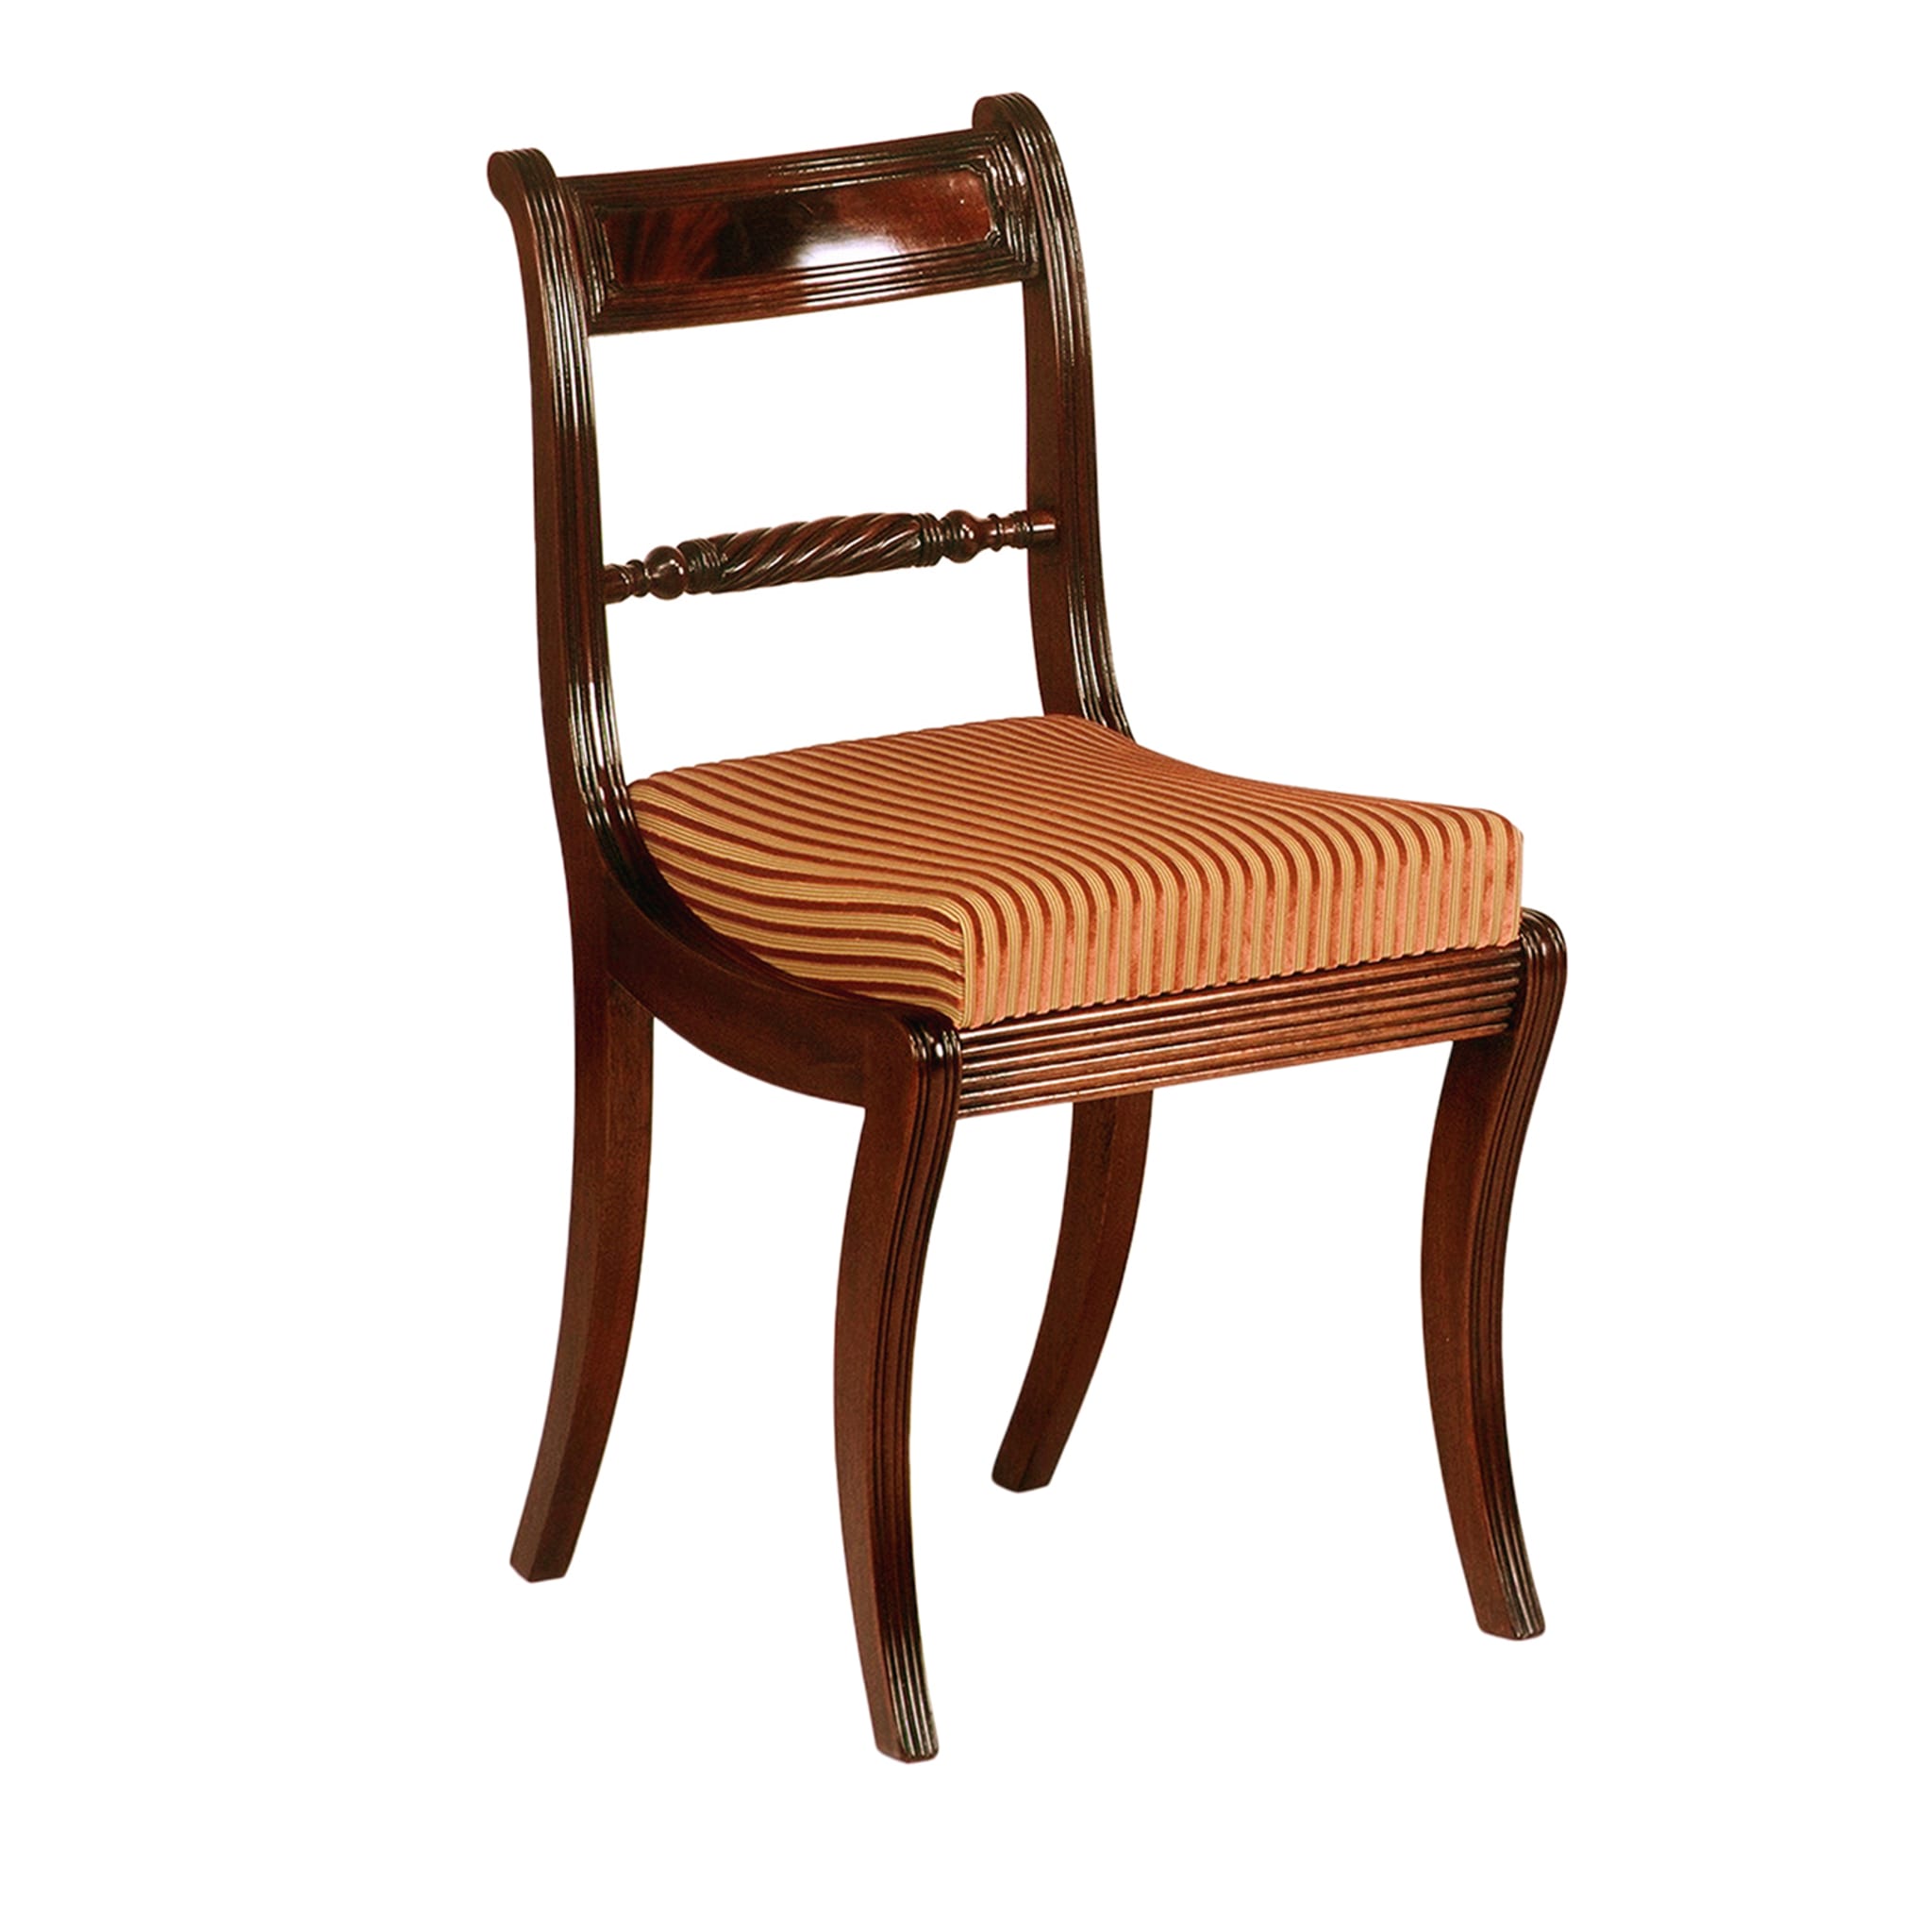 Regency-Style Mahogany Chair  - Main view